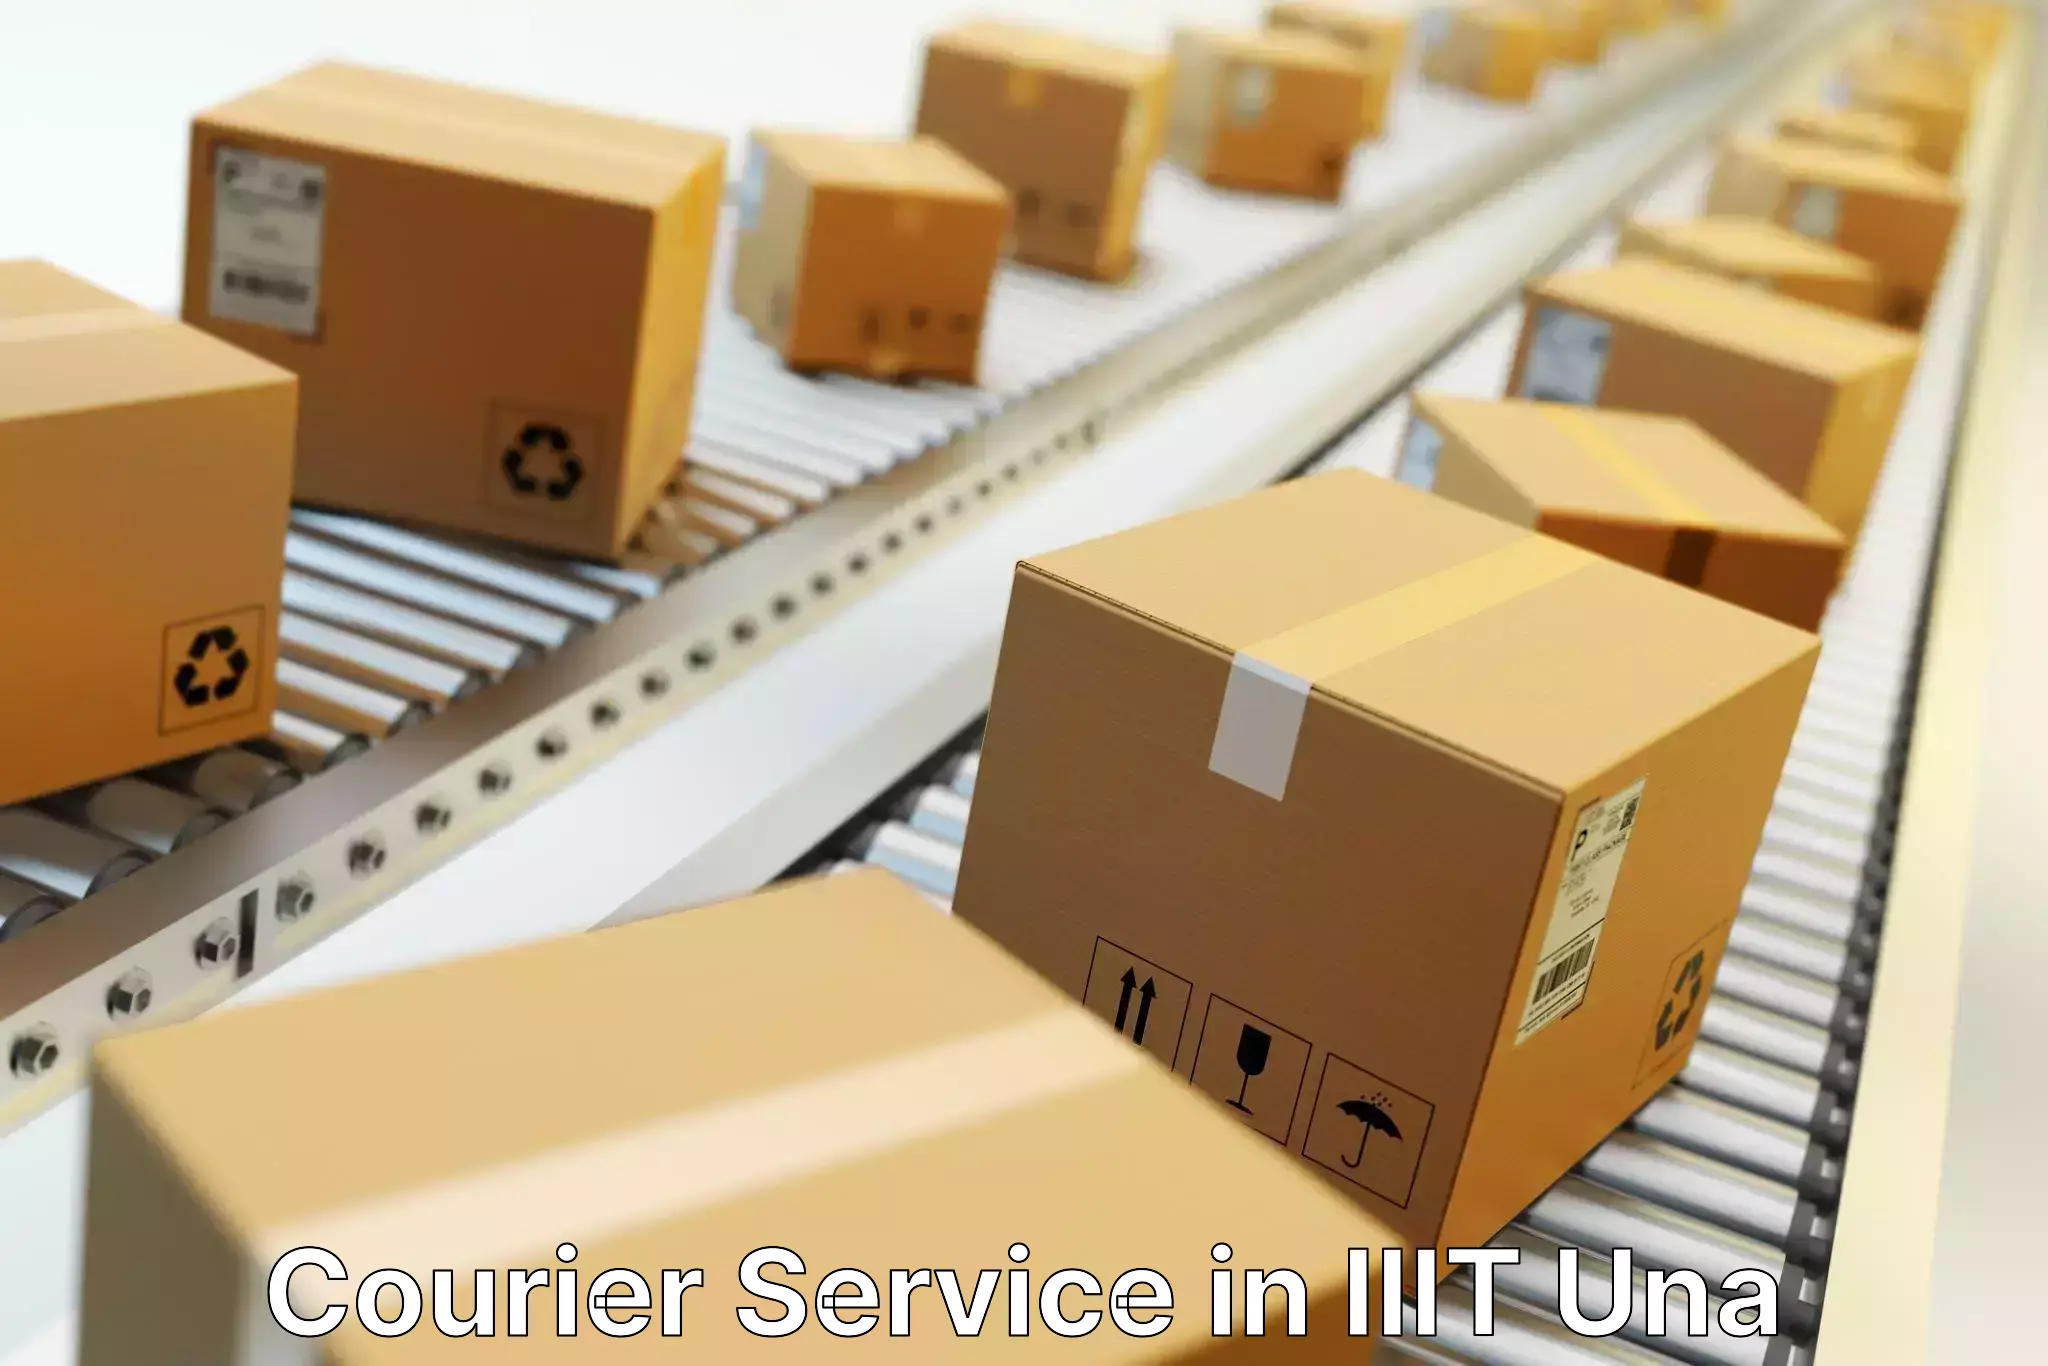 Flexible delivery schedules in IIIT Una